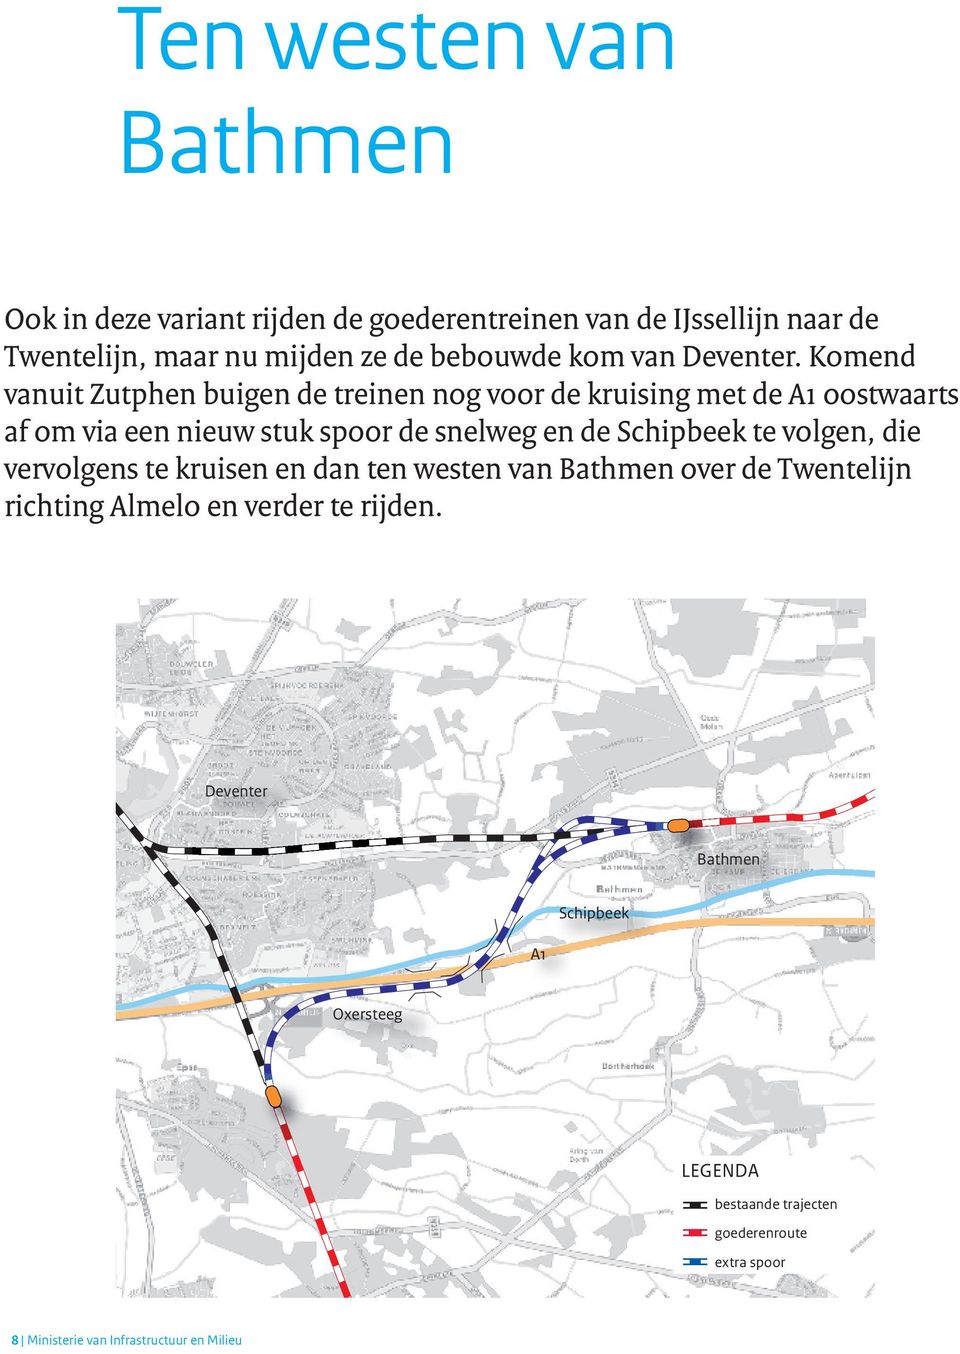 Komend vanuit Zutphen buigen de treinen nog voor de kruising met de A1 oostwaarts af om via een nieuw stuk spoor de snelweg